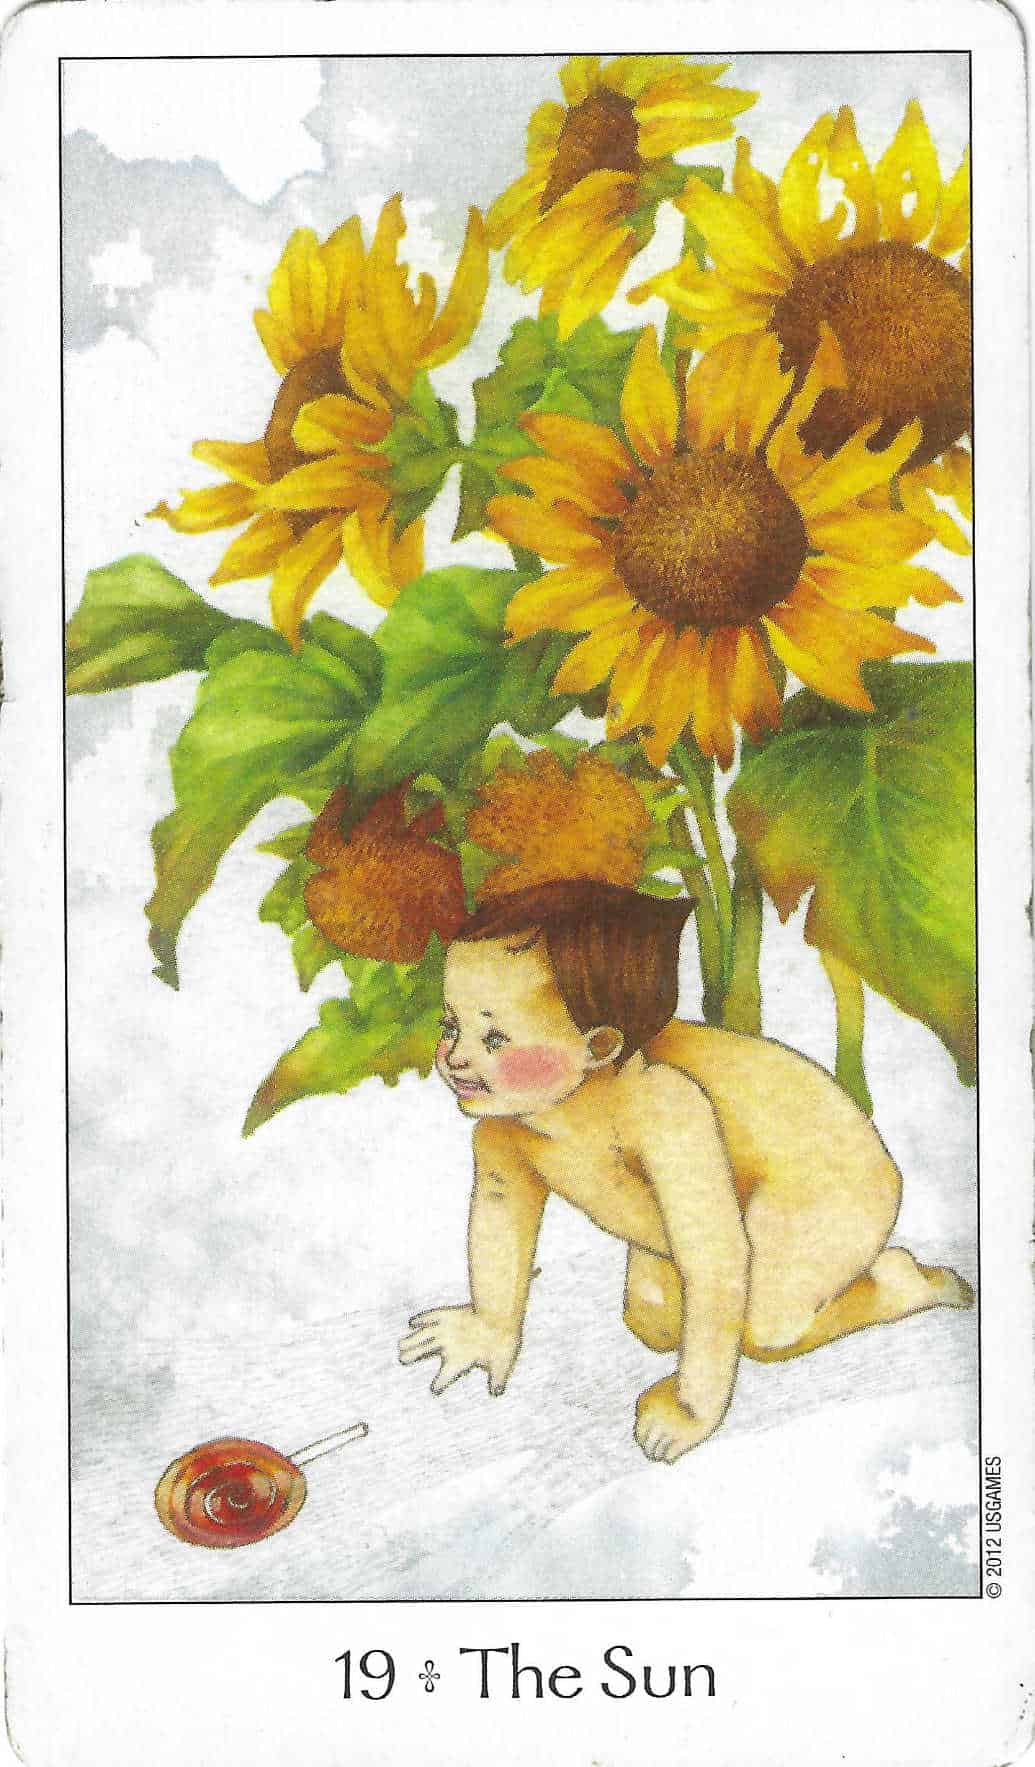 Tarot Card marjor Arcana The Sun